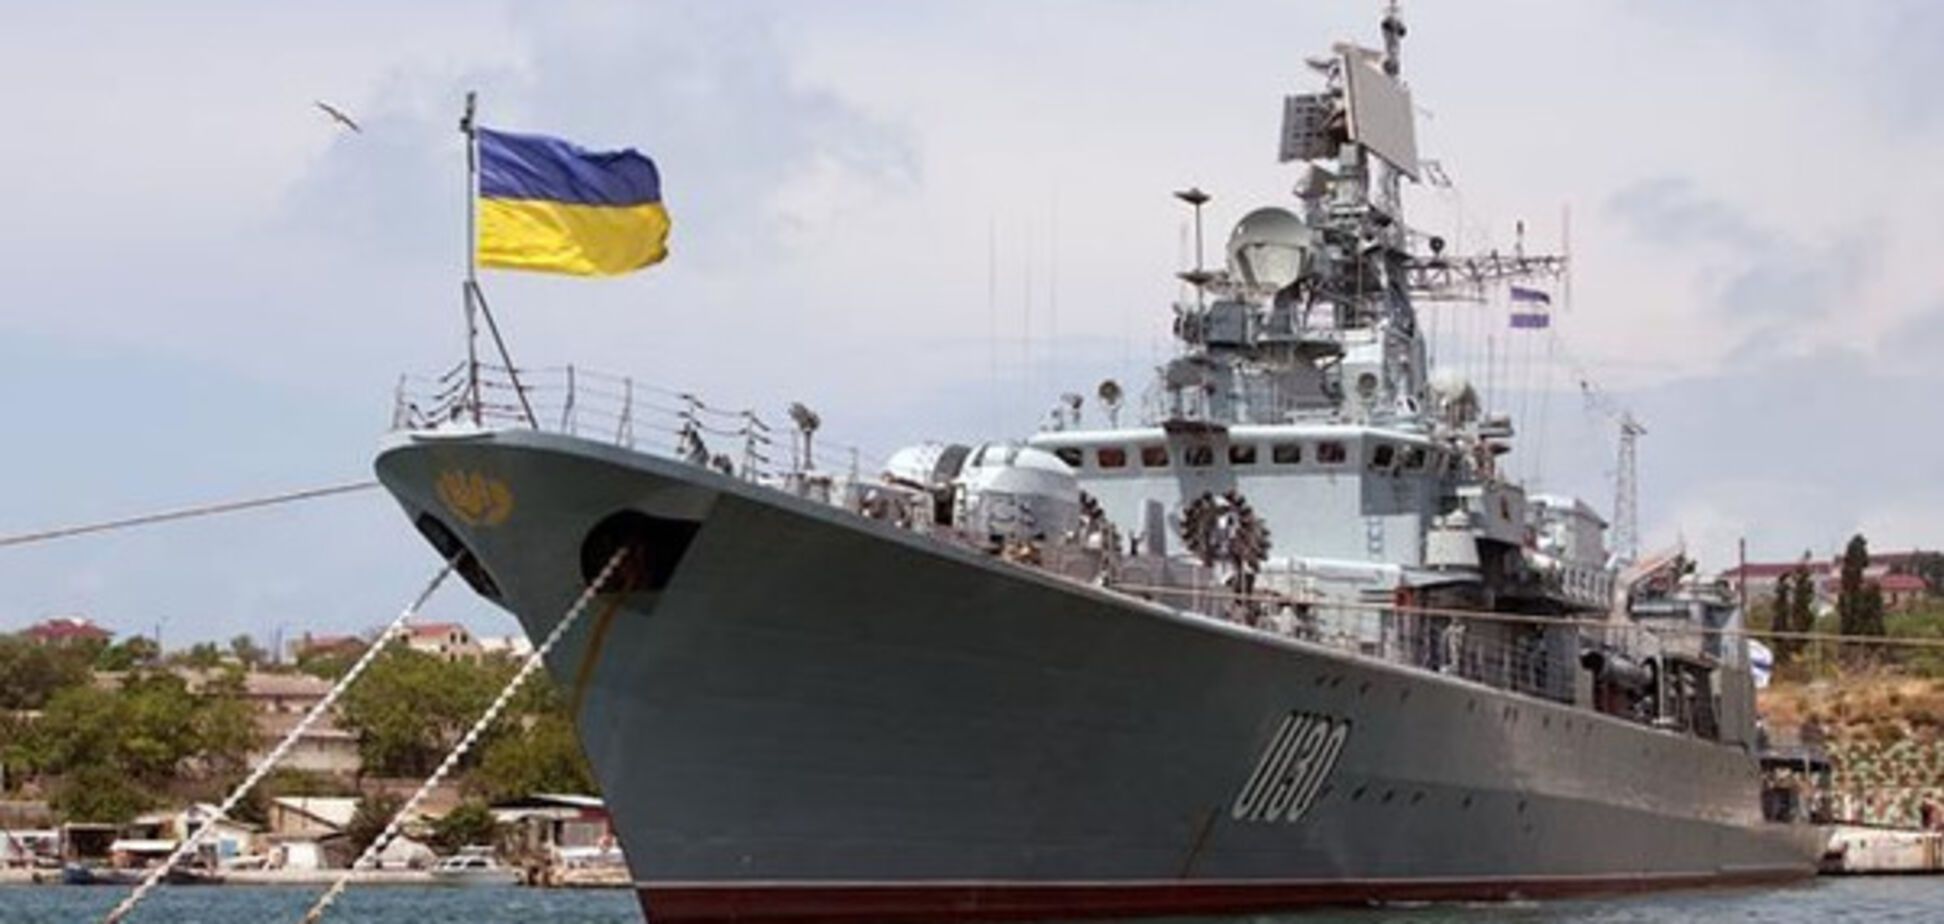 ВМС Украины